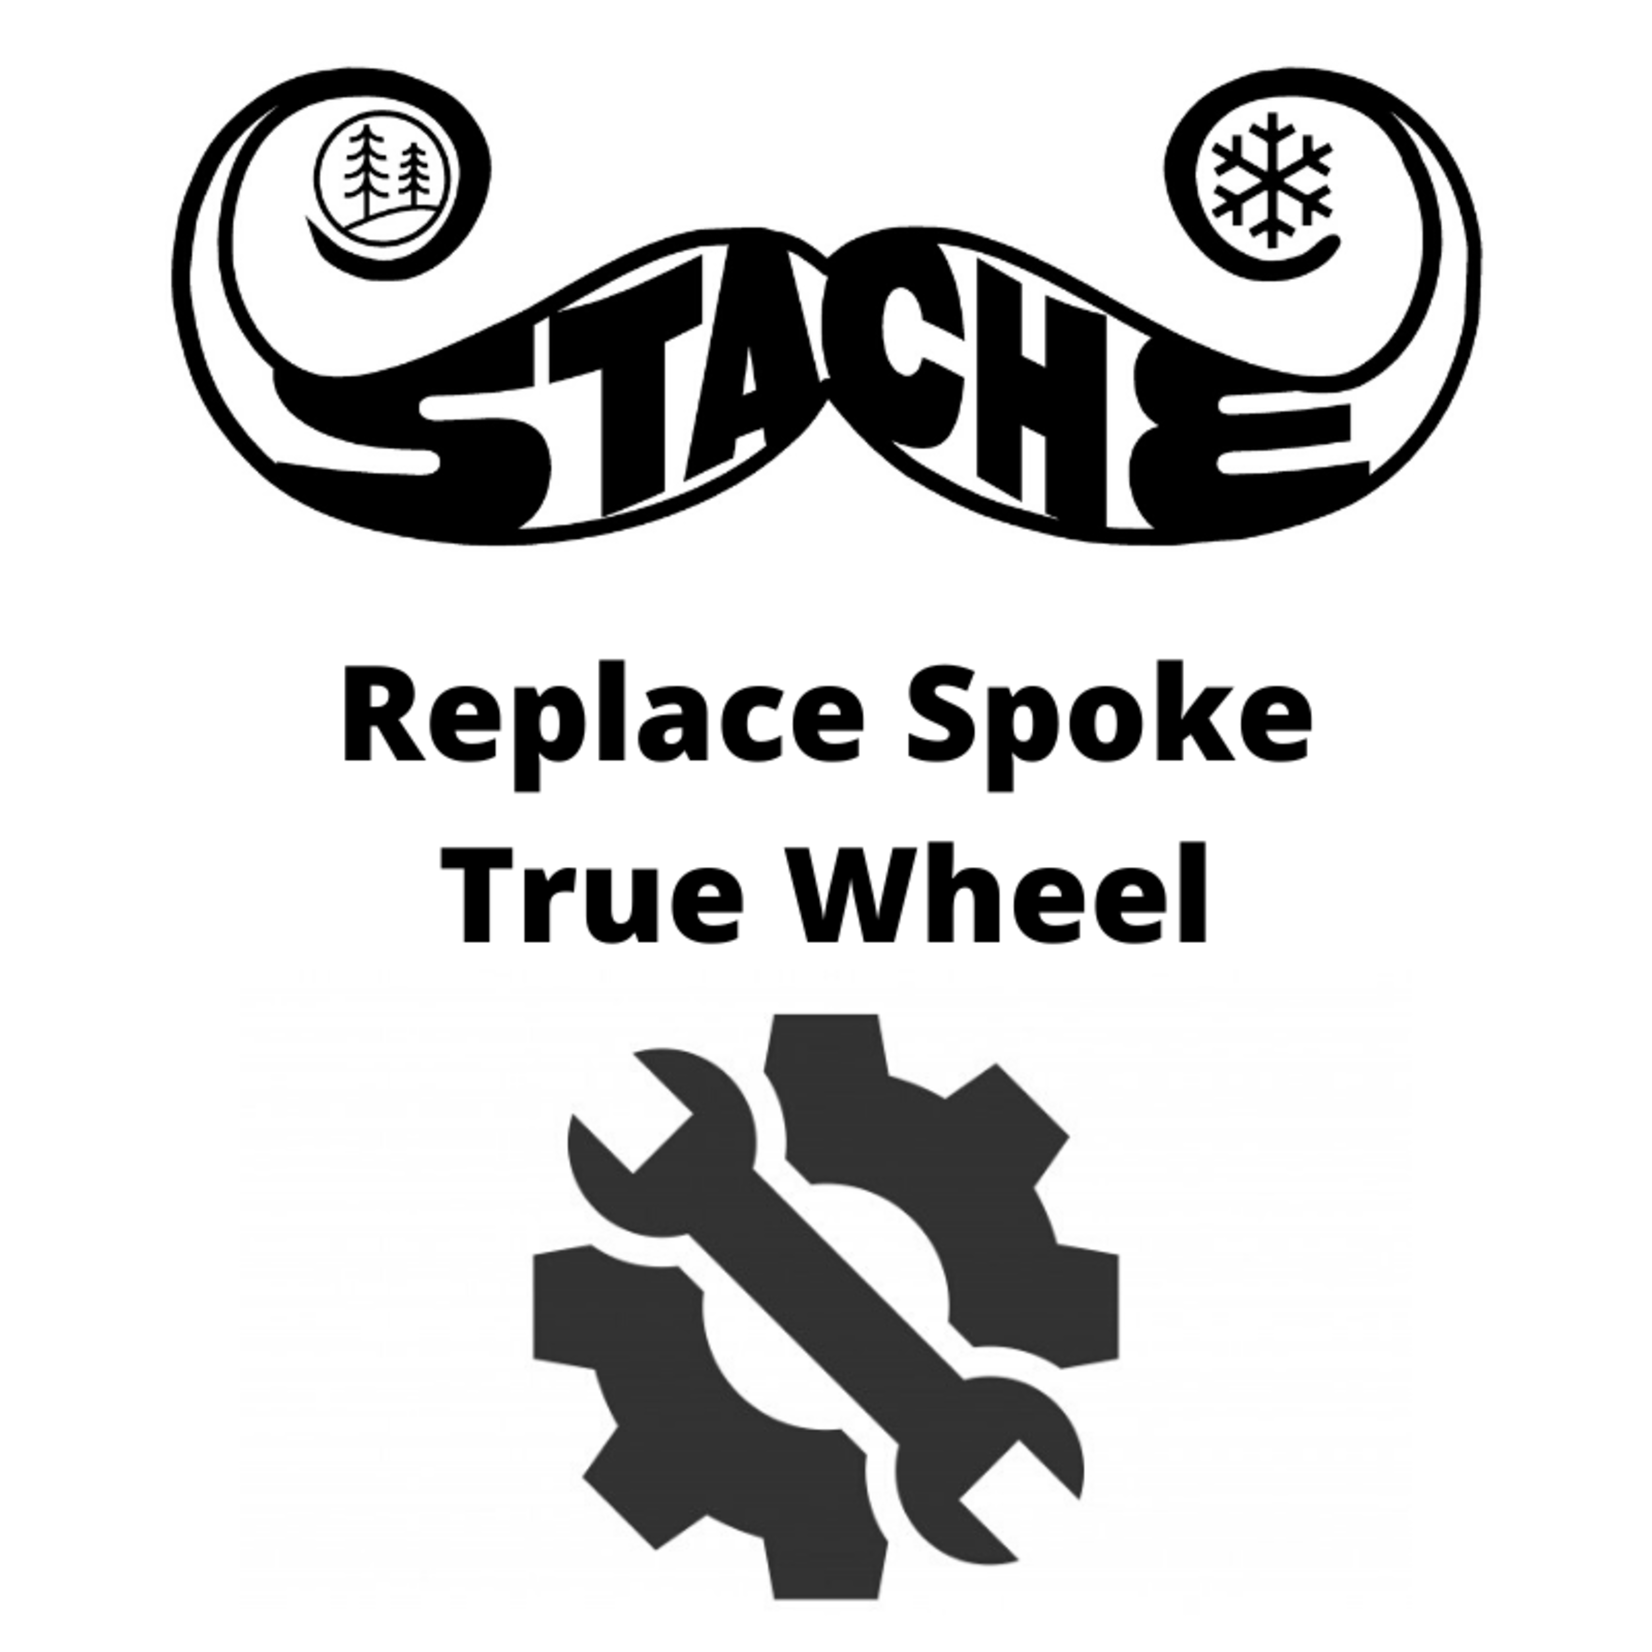 Replace Spoke True Wheel